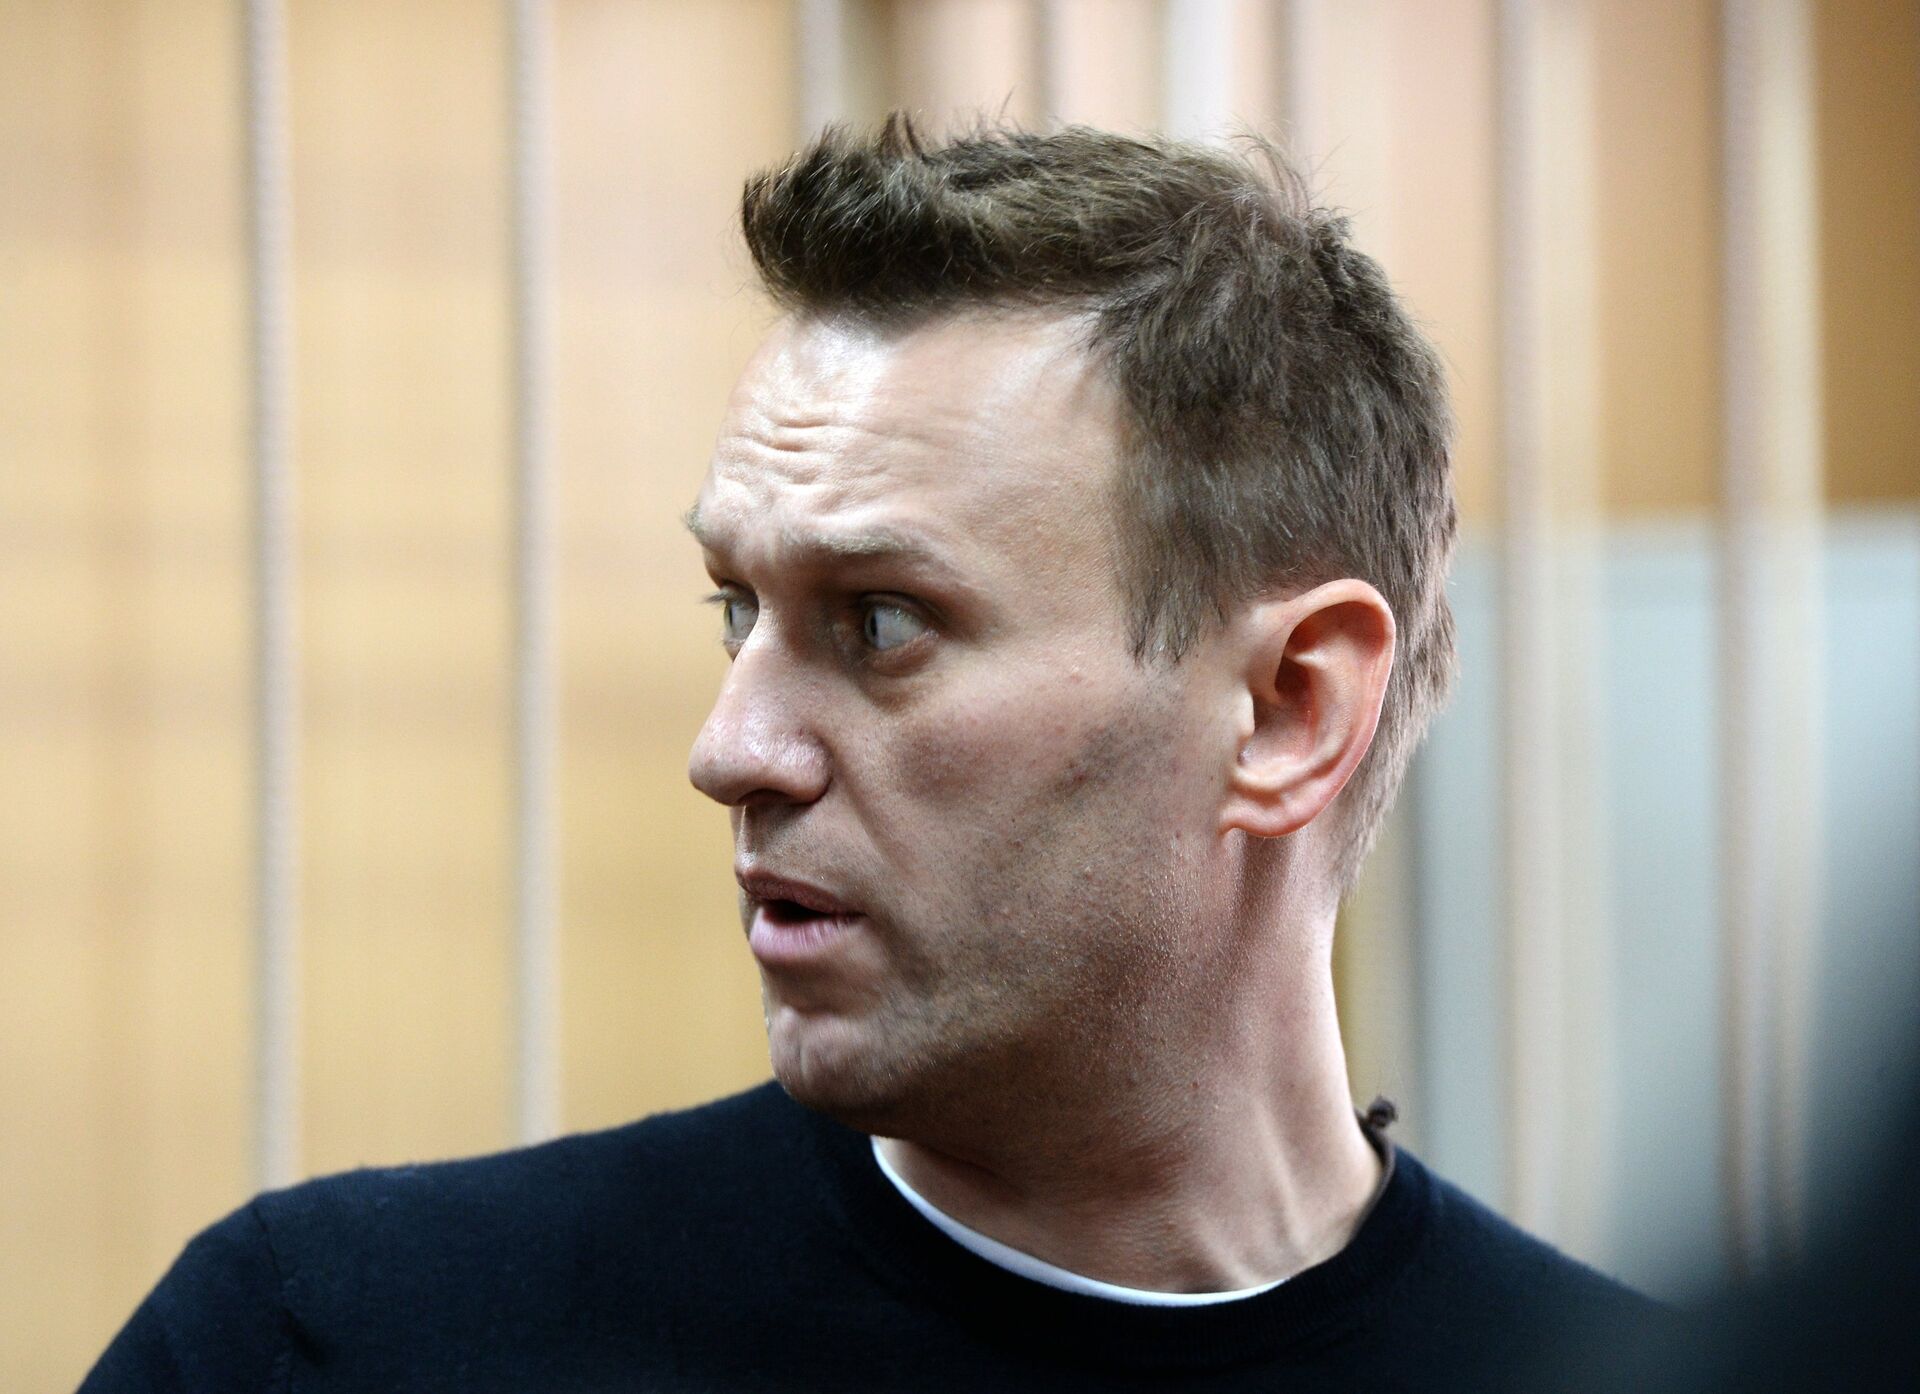 Рассмотрение дела об организации несанкционированной акции в отношении Алексея Навального - РИА Новости, 1920, 24.12.2021